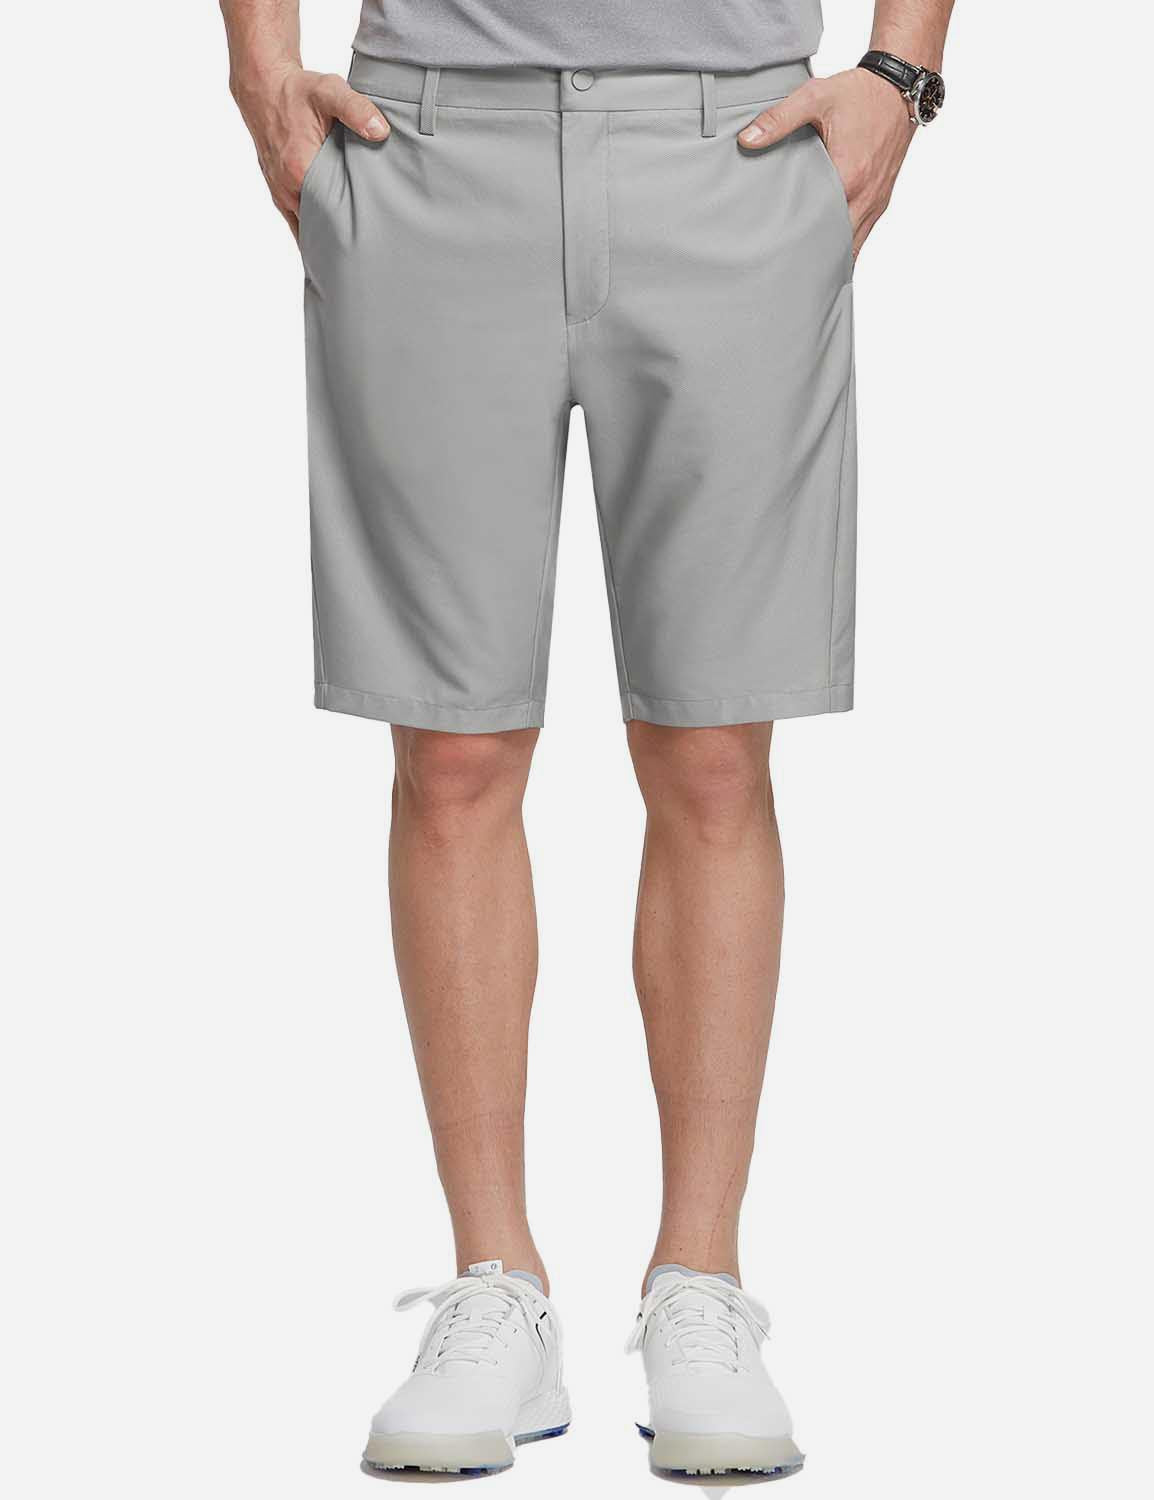 Baleaf Men's 10' UPF 50+ Lightweight Golf Shorts w Zipper Pockets cga005 Gray Front